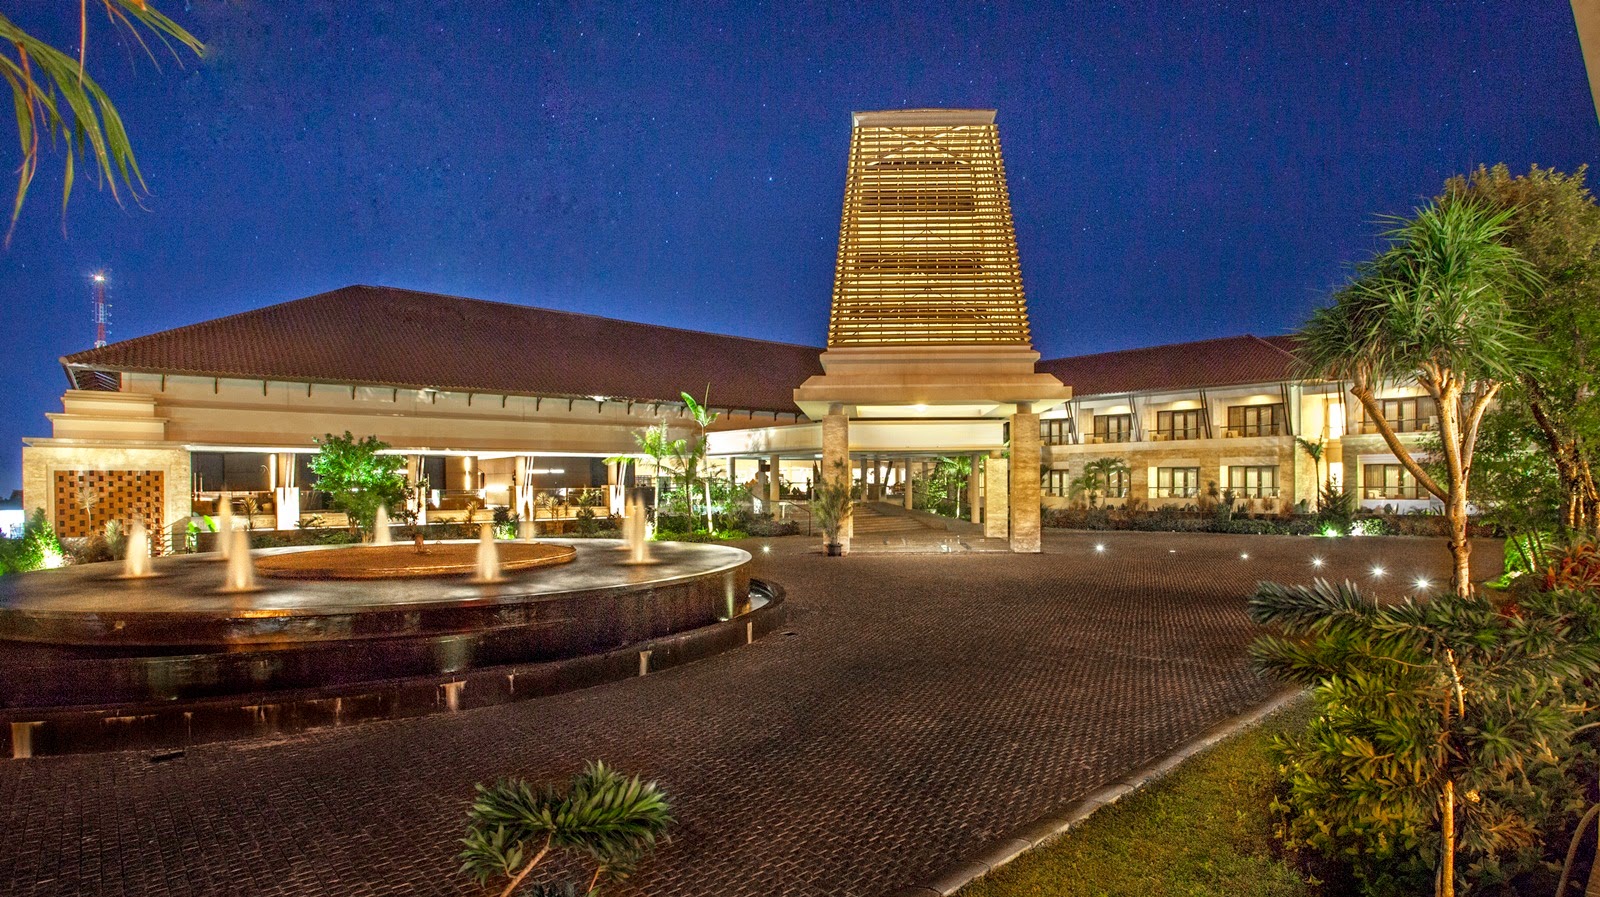 Daftar hotel terbaik bintang 5 di Malang